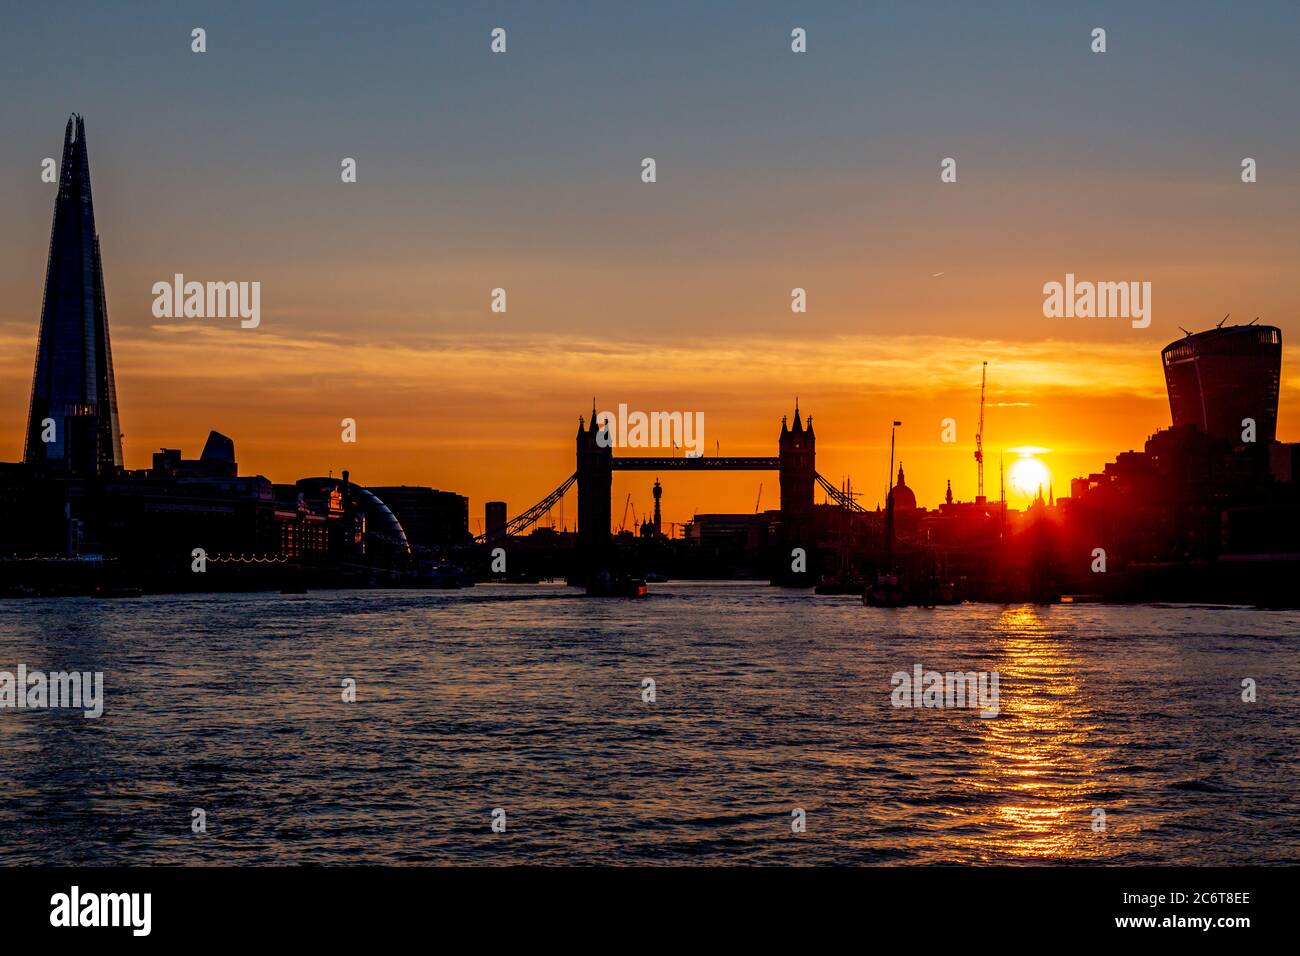 Edifici dalle linee sinuate lungo il Tamigi a Londra, al tramonto Foto Stock